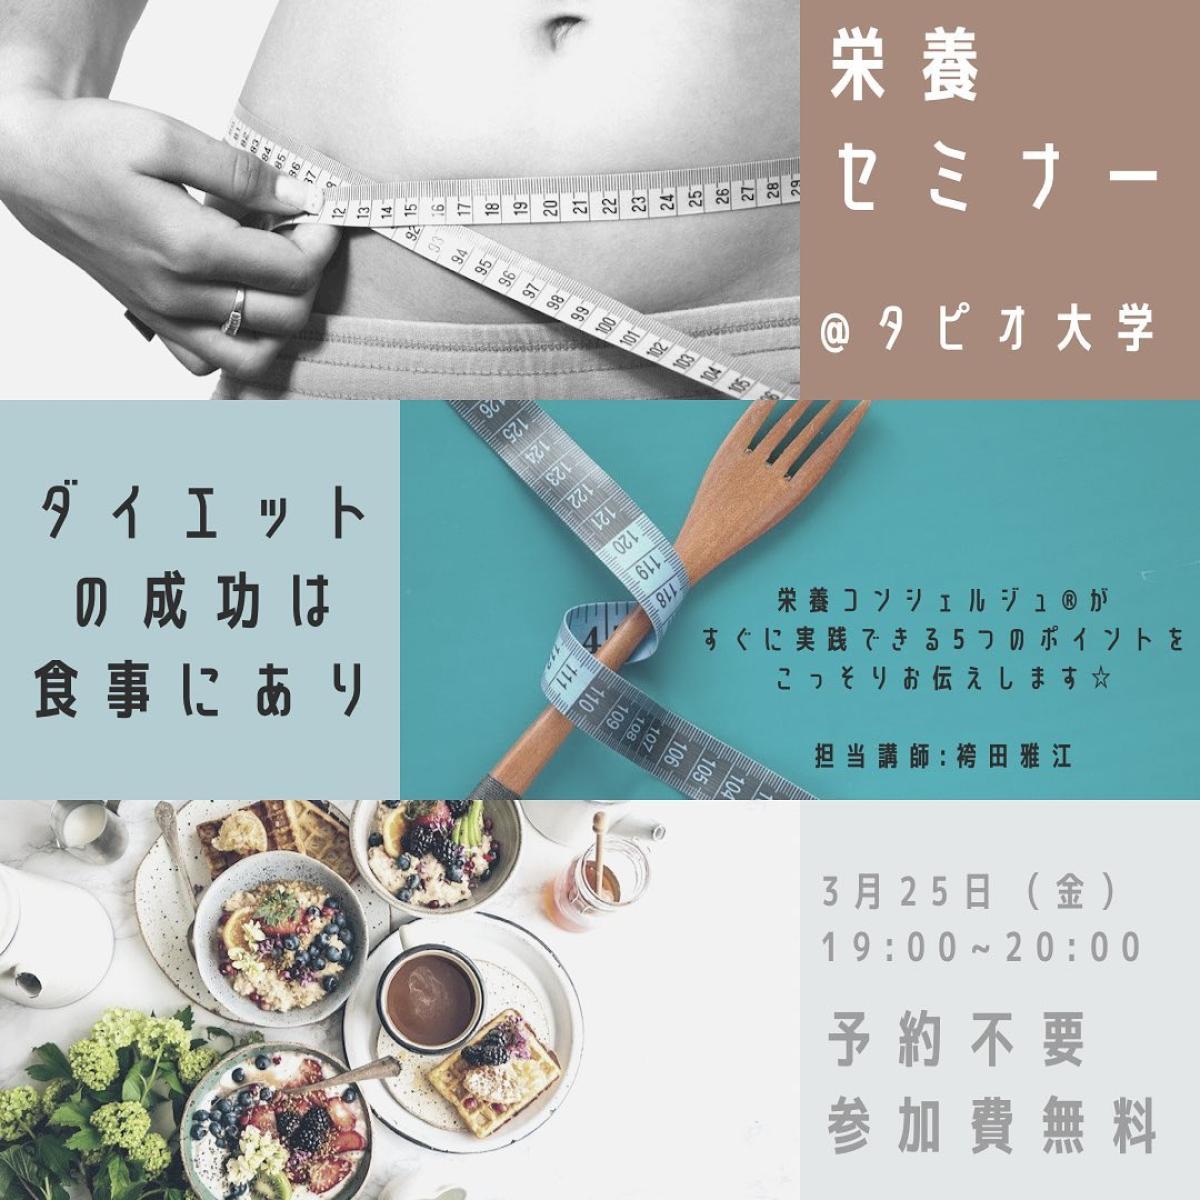 3月25日に袴田雅江さんが栄養セミナーの講師をご担当されます！【栄養コンシェルジュ取得後のご活躍】